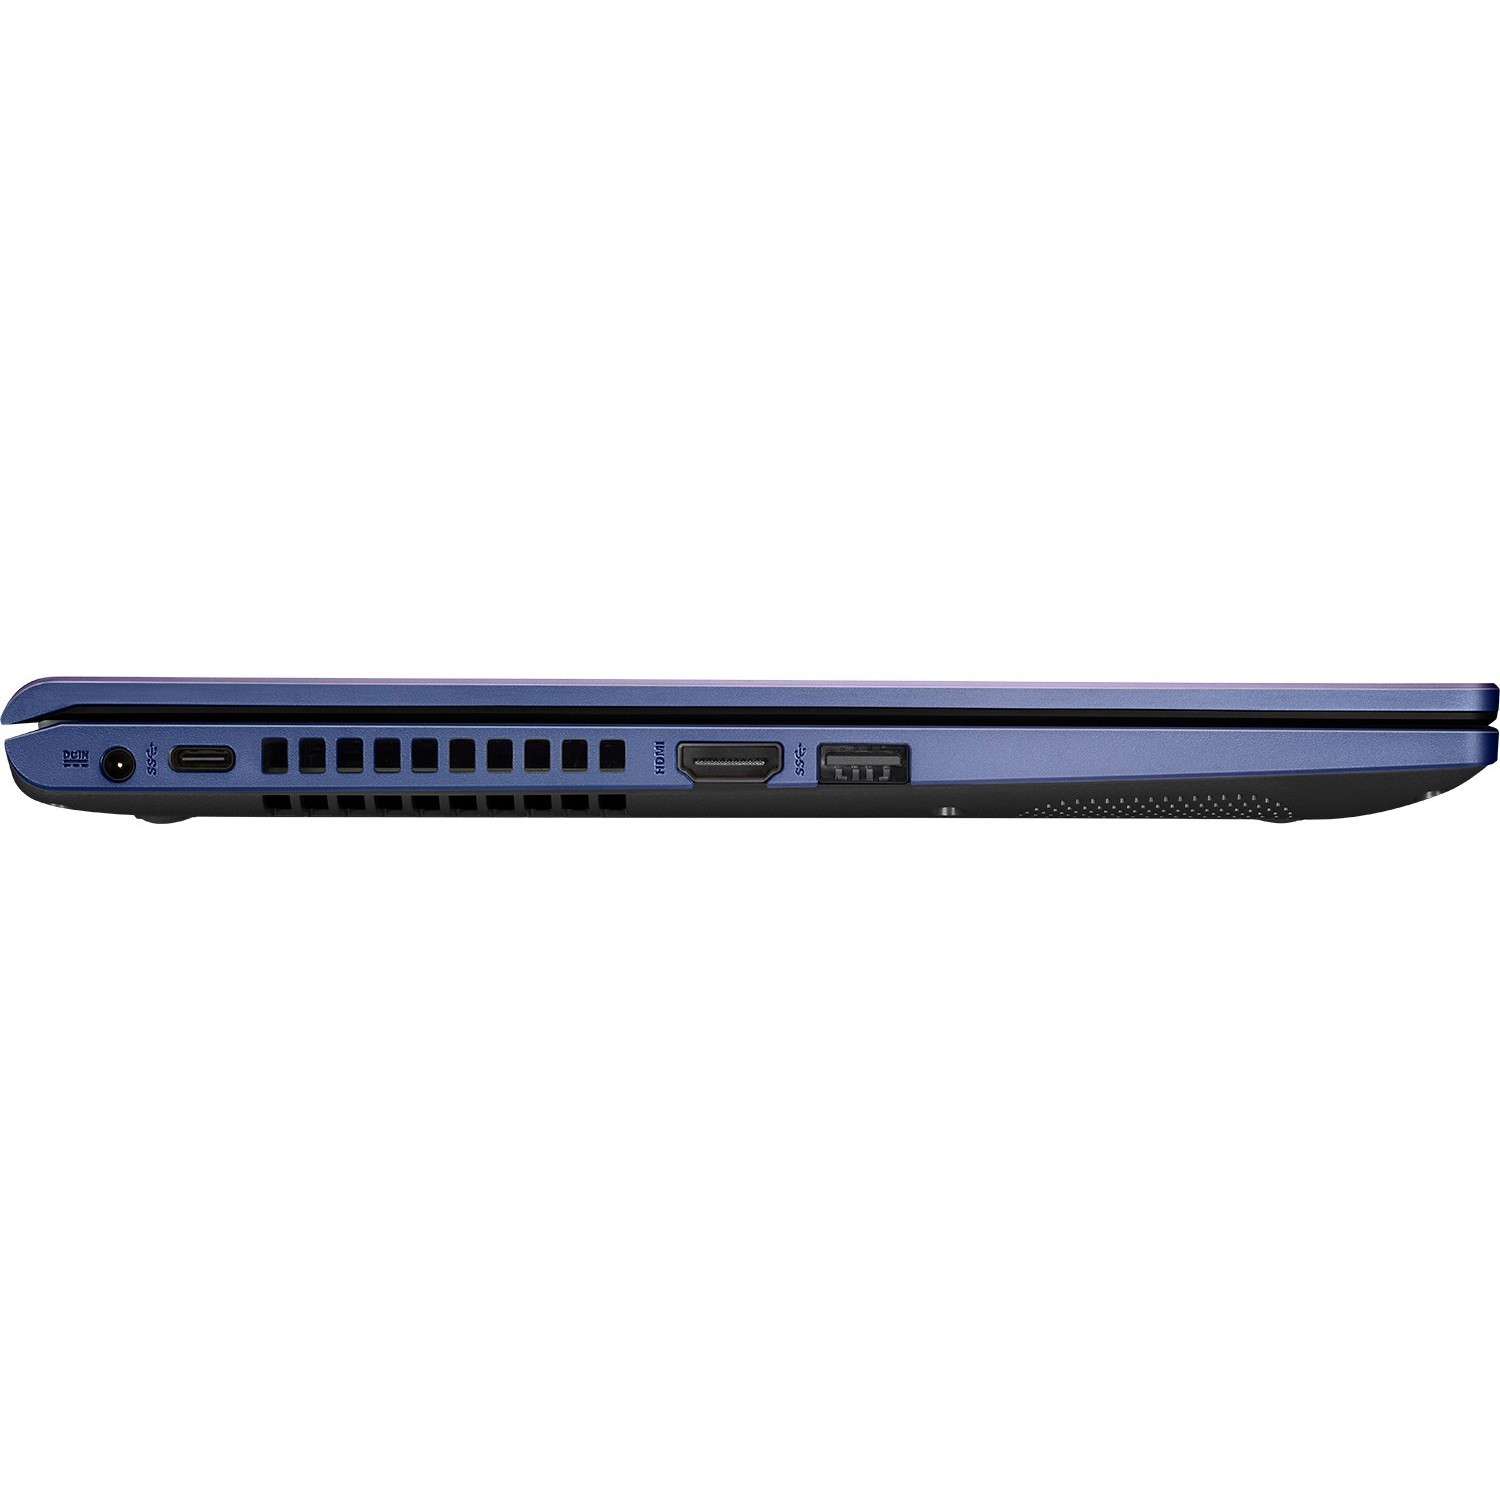 Ноутбук Asus X409FA (X409FA-BV625)